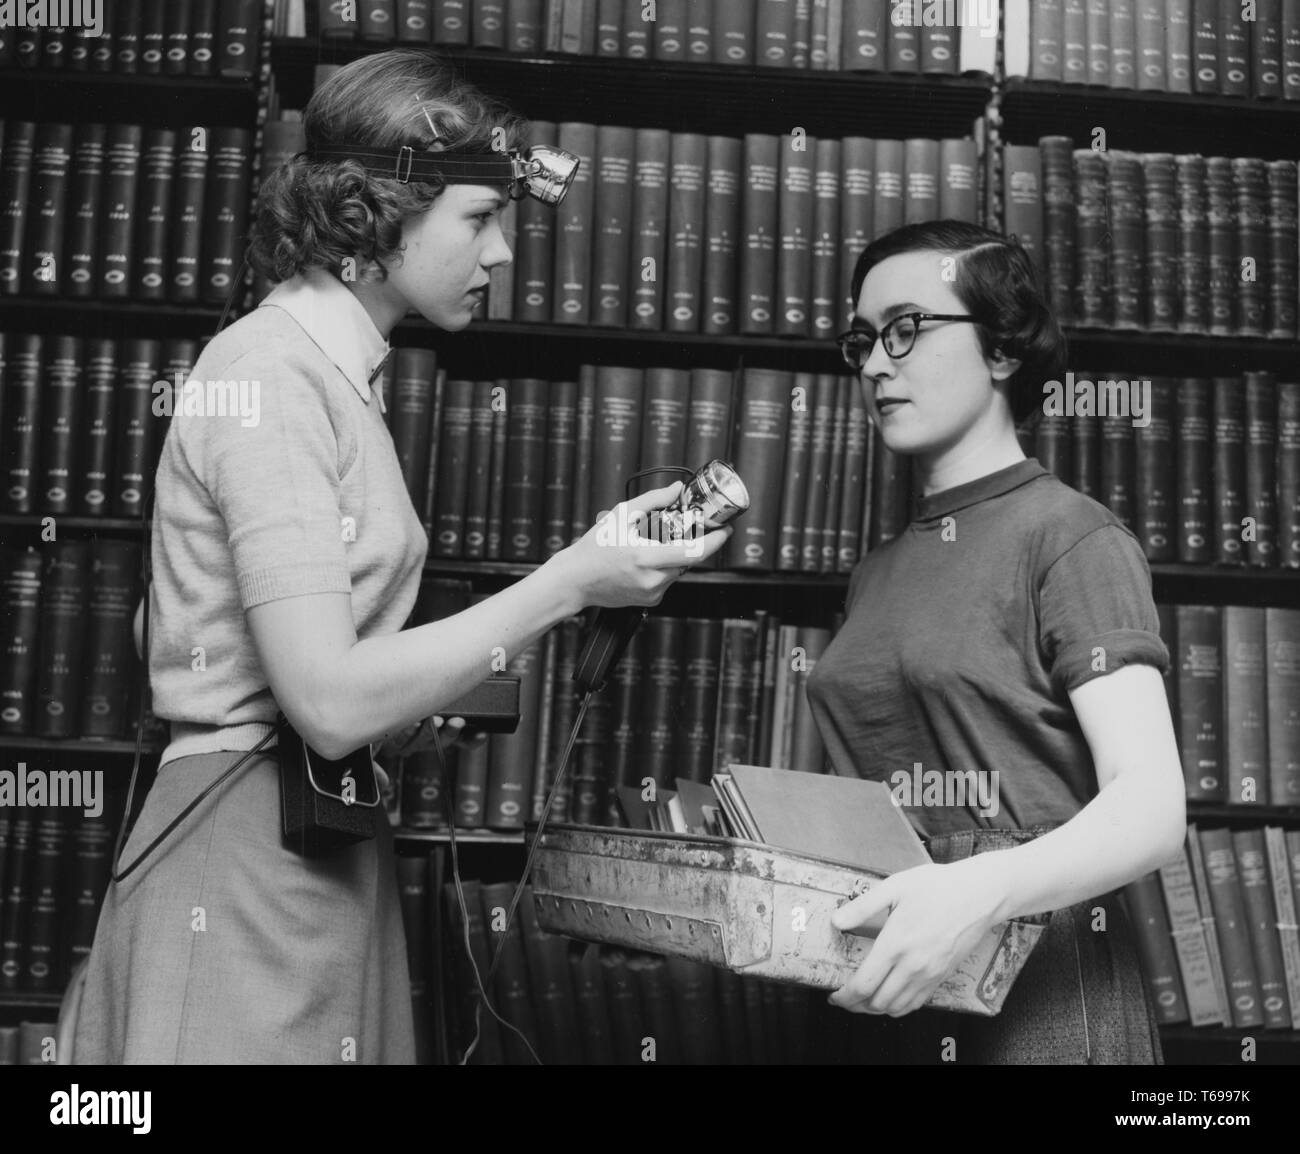 Photographie en noir et blanc de deux minces, les jeunes femmes aux cheveux noirs, probablement des bibliothécaires, de profil, debout en face de l'autre ; la femme à gauche, qui porte une bande avec une lampe autour de sa tête et une batterie à sa taille, offre une deuxième lampe de tête à son collègue, dont les mains sont remplis d'un bac de slim livres ou papiers ; avec des étagères de livres à couverture rigide en arrière-plan ; situé à la New York Public Library à New York, USA, 1948. À partir de la Bibliothèque publique de New York. () Banque D'Images